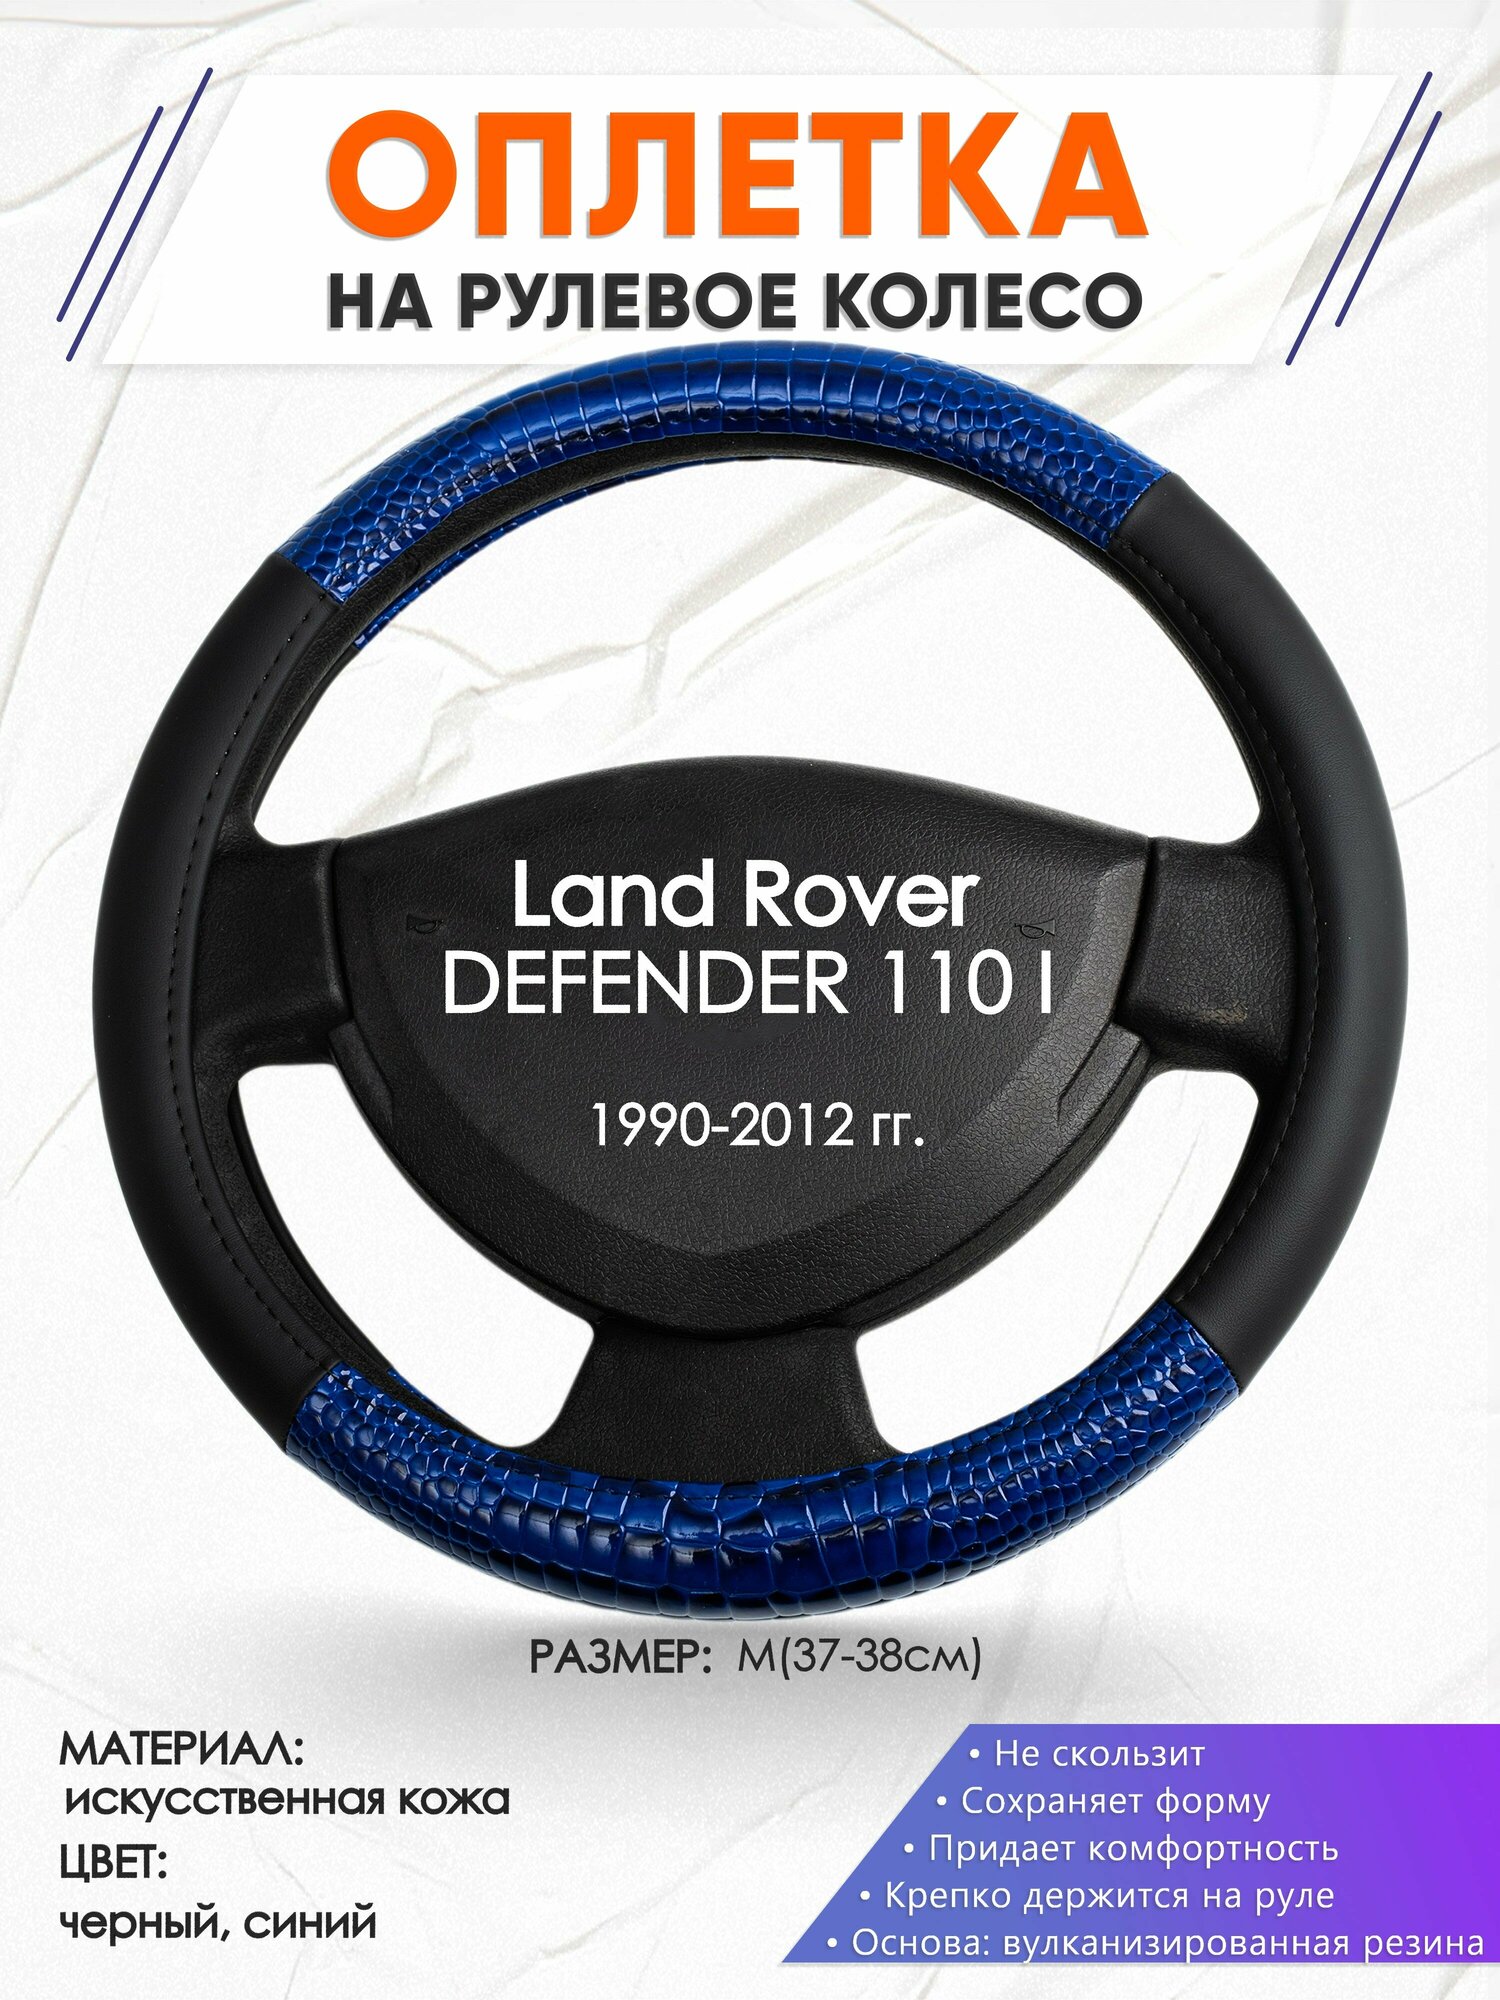 Оплетка наруль для Land Rover DEFENDER 110 I(Ленд Ровер Дефендер 110) 1990-2012 годов выпуска, размер M(37-38см), Искусственная кожа 82